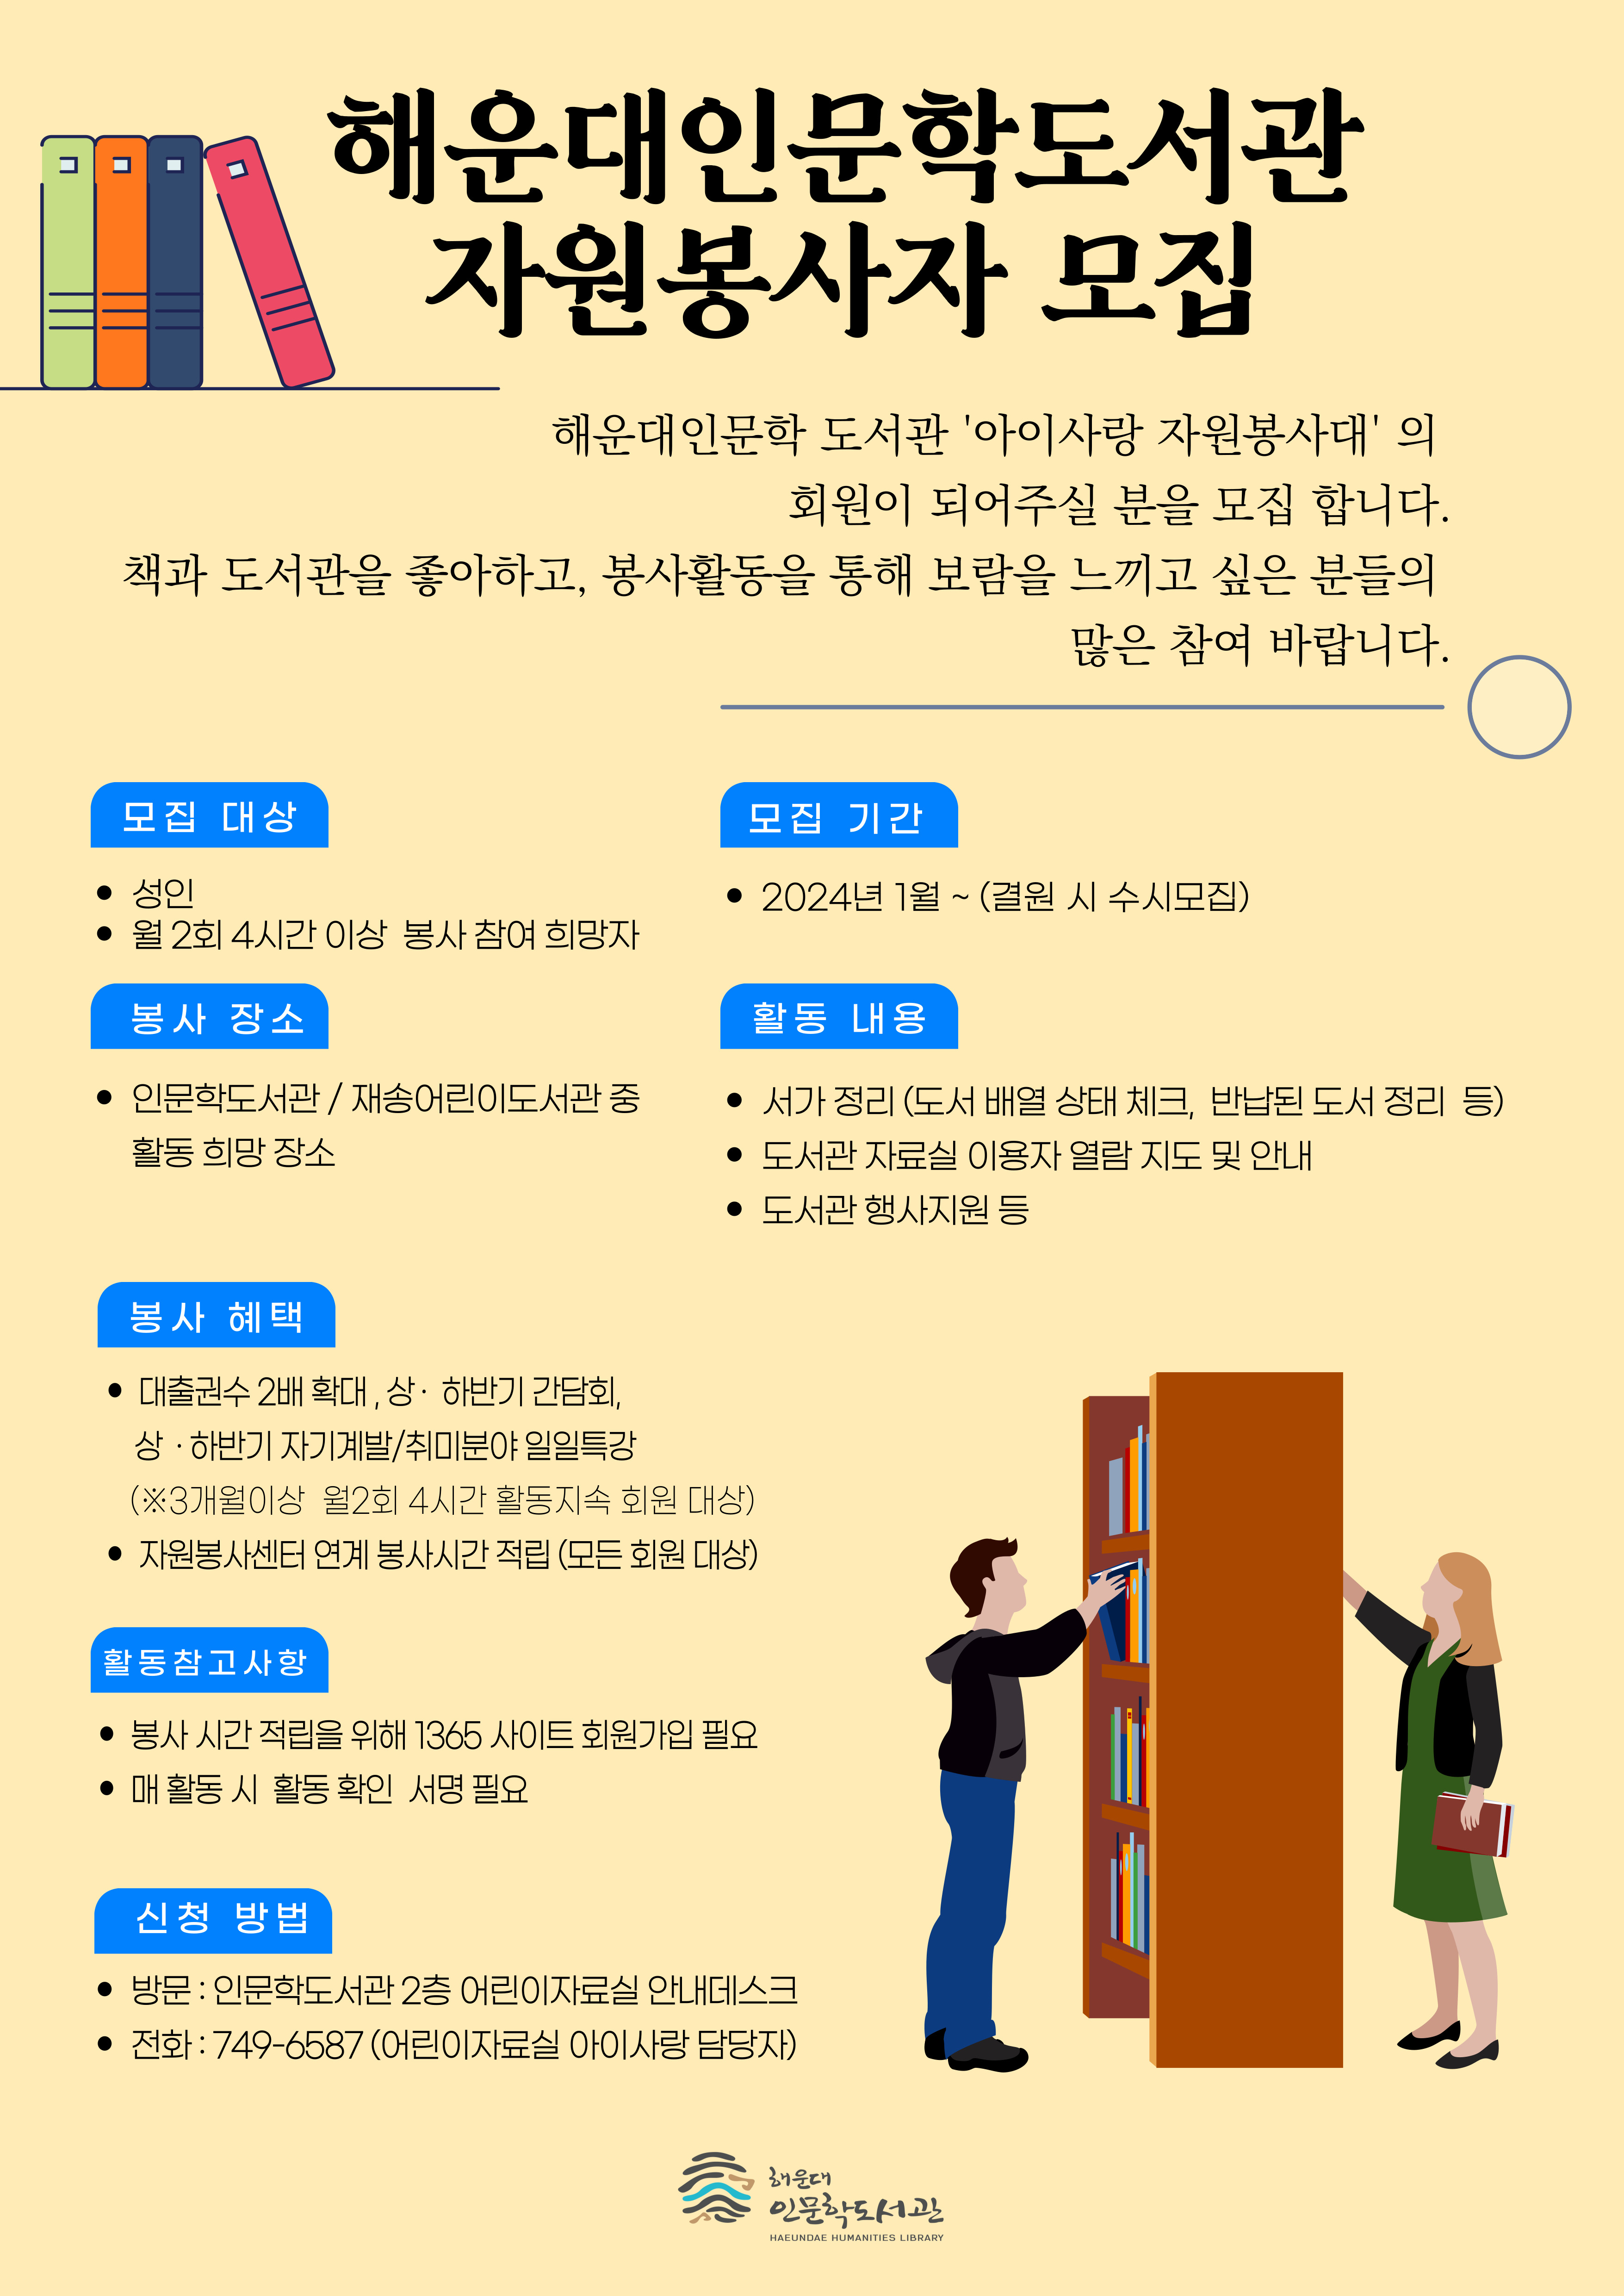 해운대인문학도서관 아이사랑 자원봉사자 모집